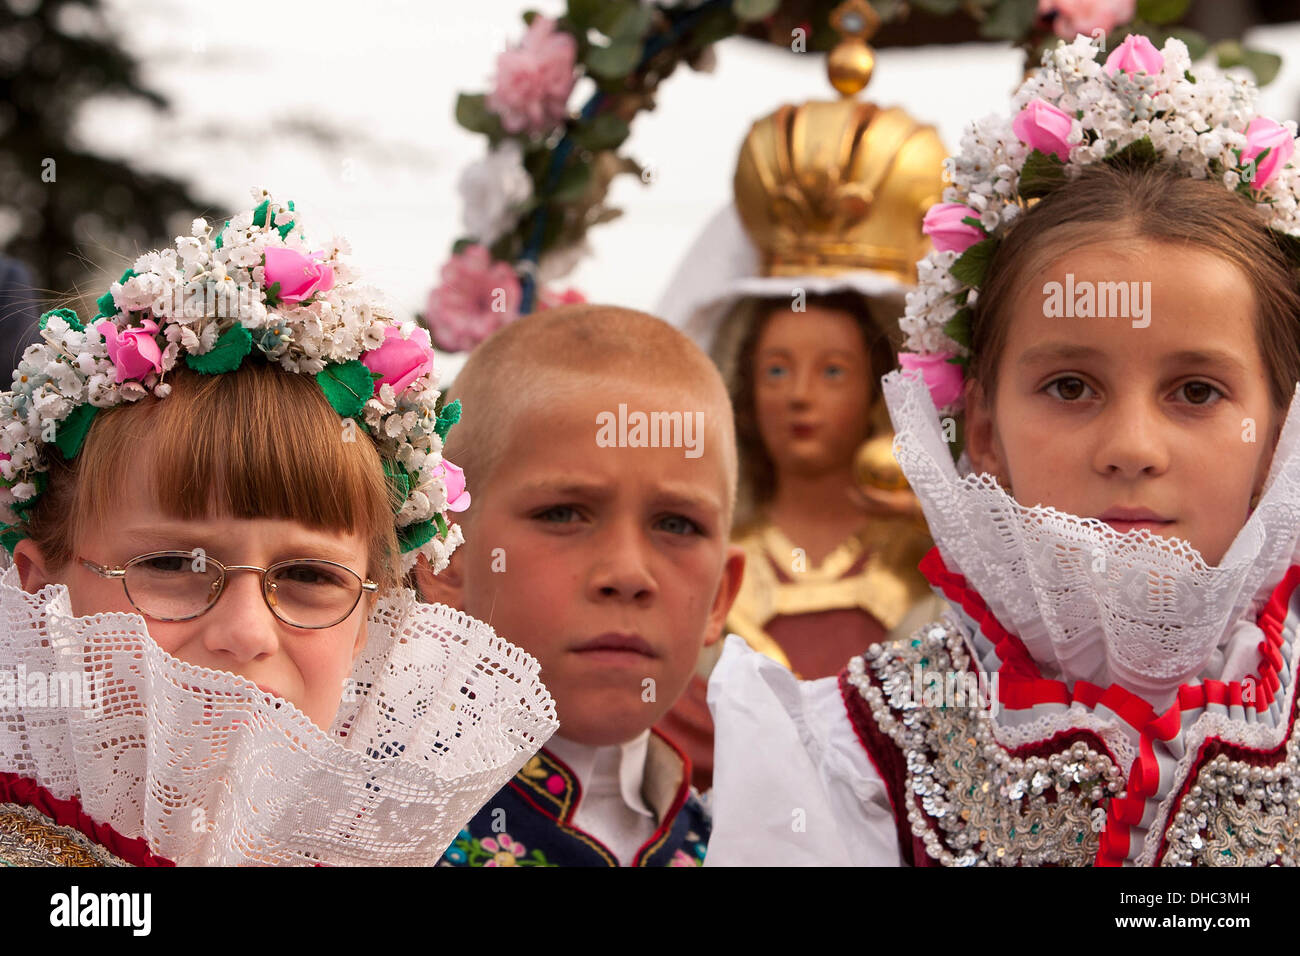 Les enfants de personnes en costumes folkloriques, pèlerinage chrétien Marie pour Zarosice, Moravie du Sud, République Tchèque, Europe Banque D'Images